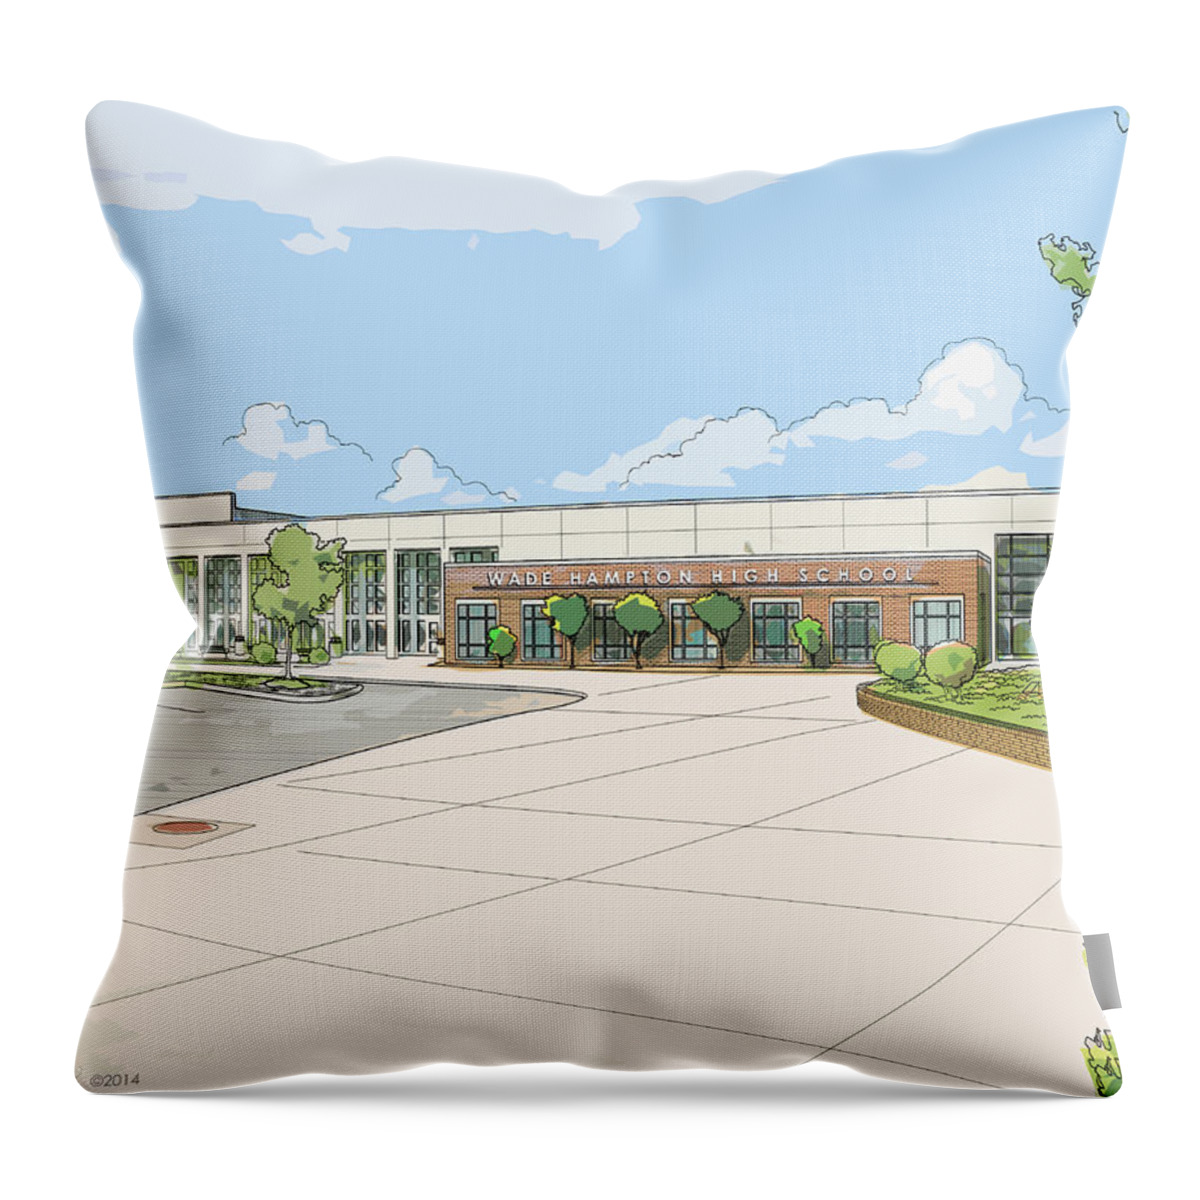 Landscape Throw Pillow featuring the digital art Wade Hampton High School by Greg Joens